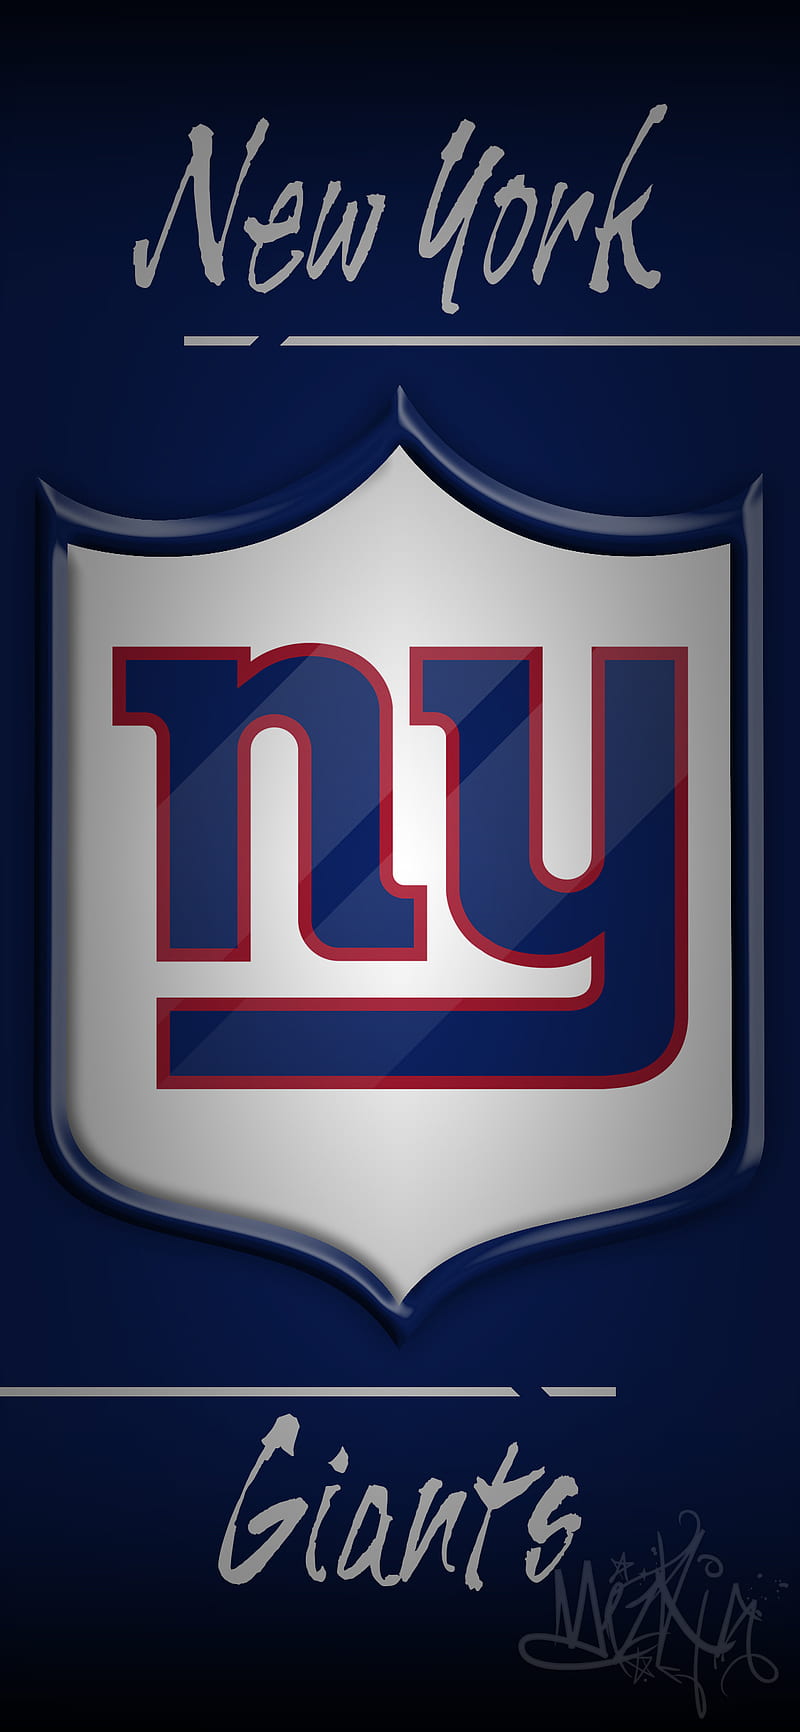 New York Giants, blue, east, eli manning, mizkjg, new york, nfc, nfl, odell beckham jr, red, HD phone wallpaper